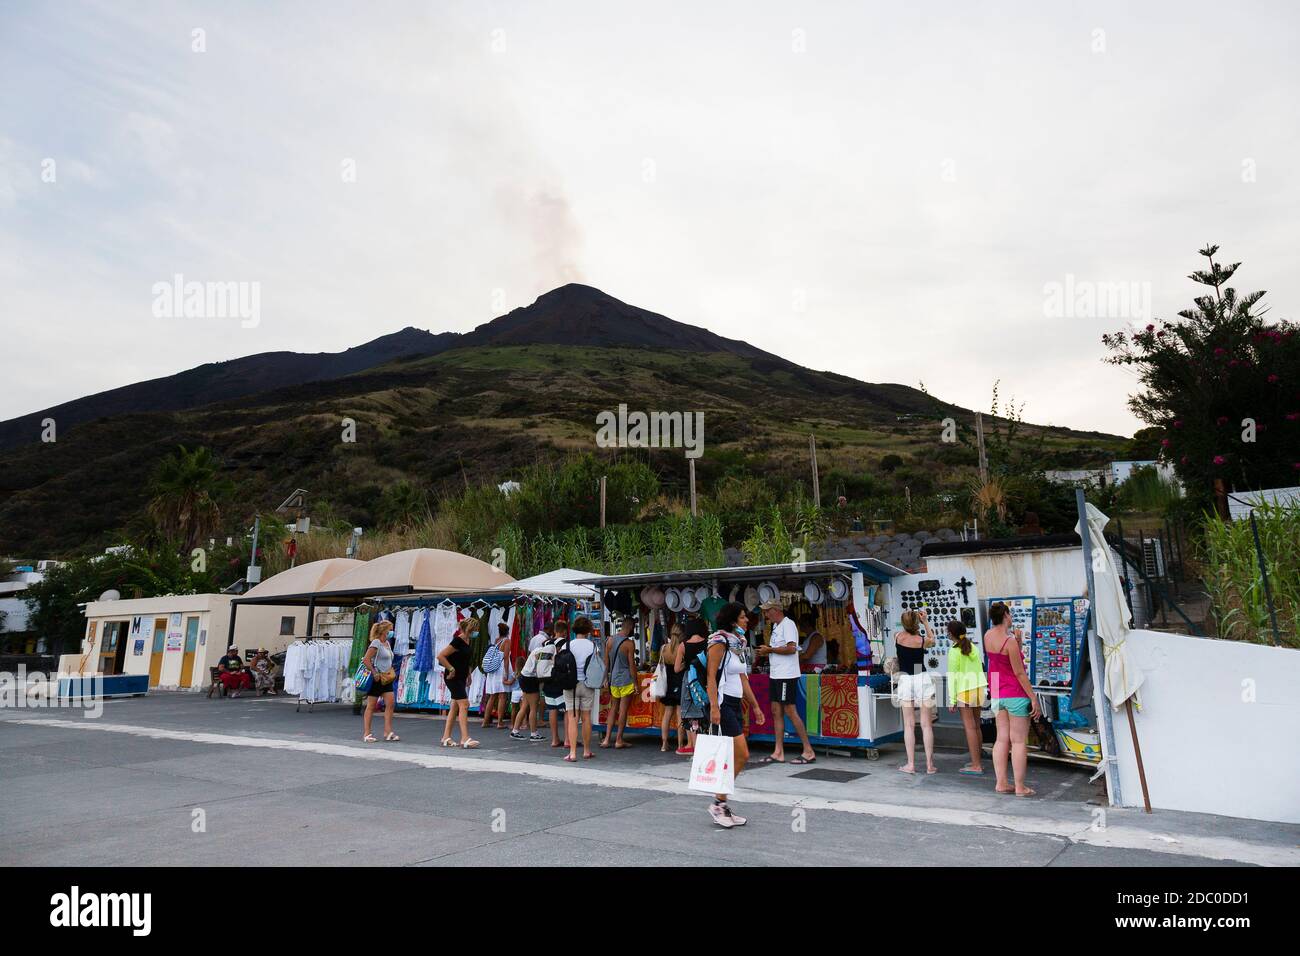 Sicilia, Italia. Los turistas caminan por una de las calles principales de la isla volcánica de Stromboli, pasando por pequeñas cabañas que venden recuerdos. El volcán de STRO Foto de stock